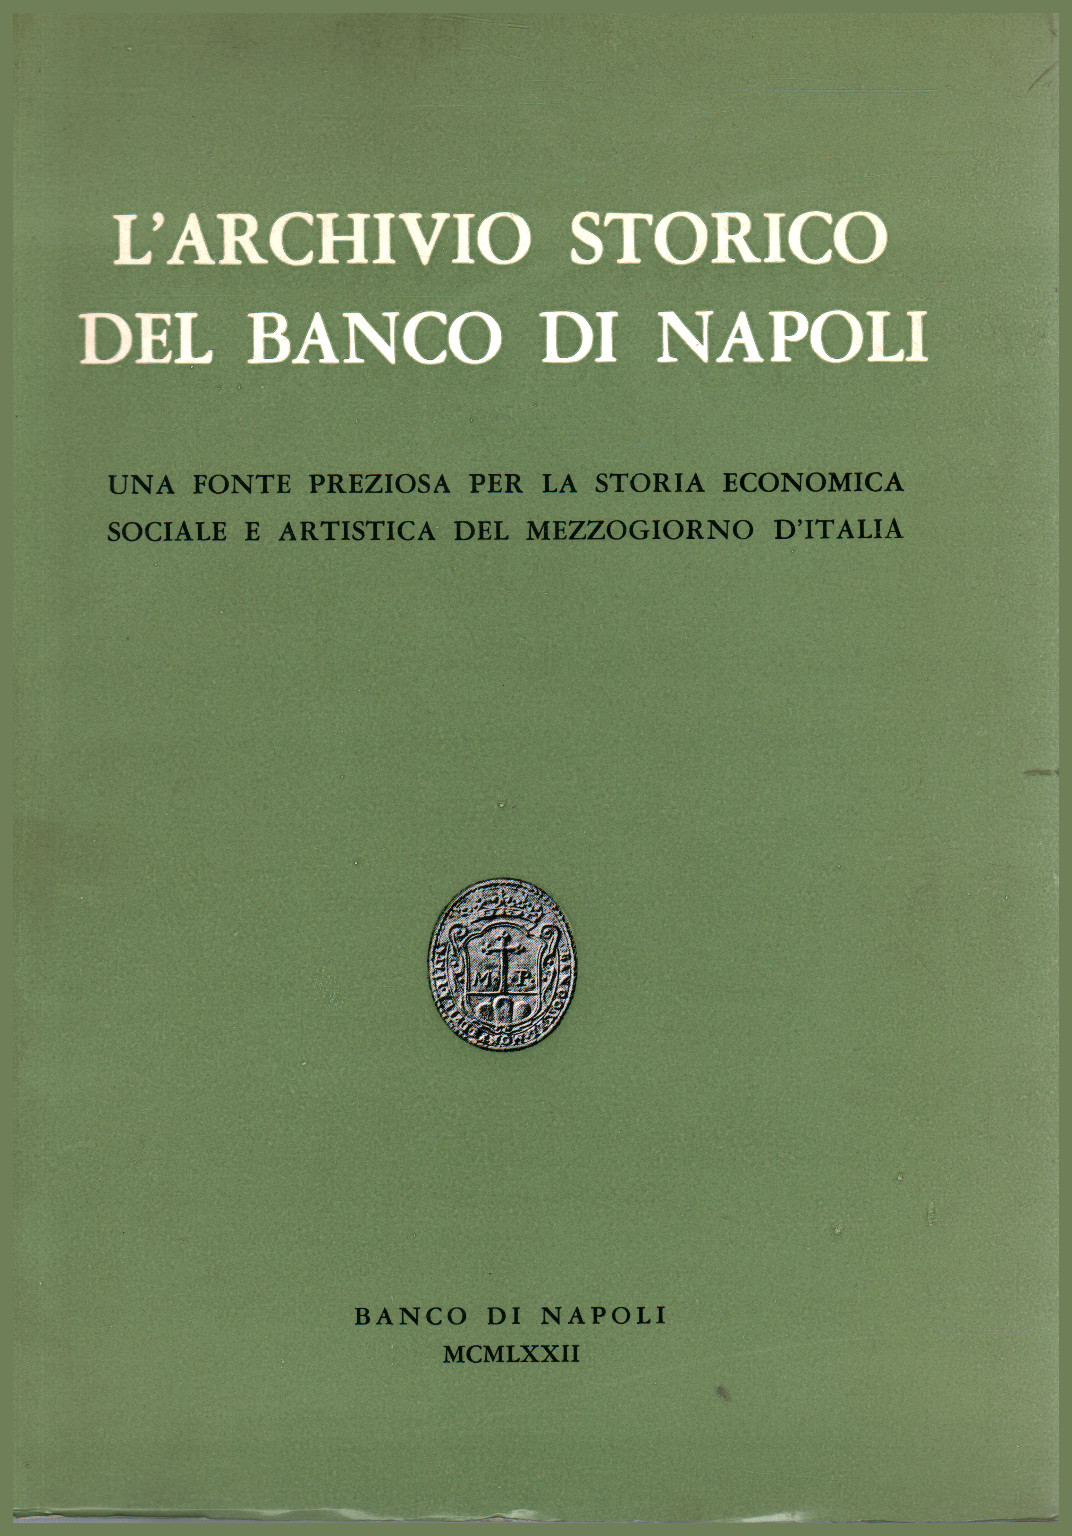 L the Historical Archive of the Banco di Napoli, s.a.